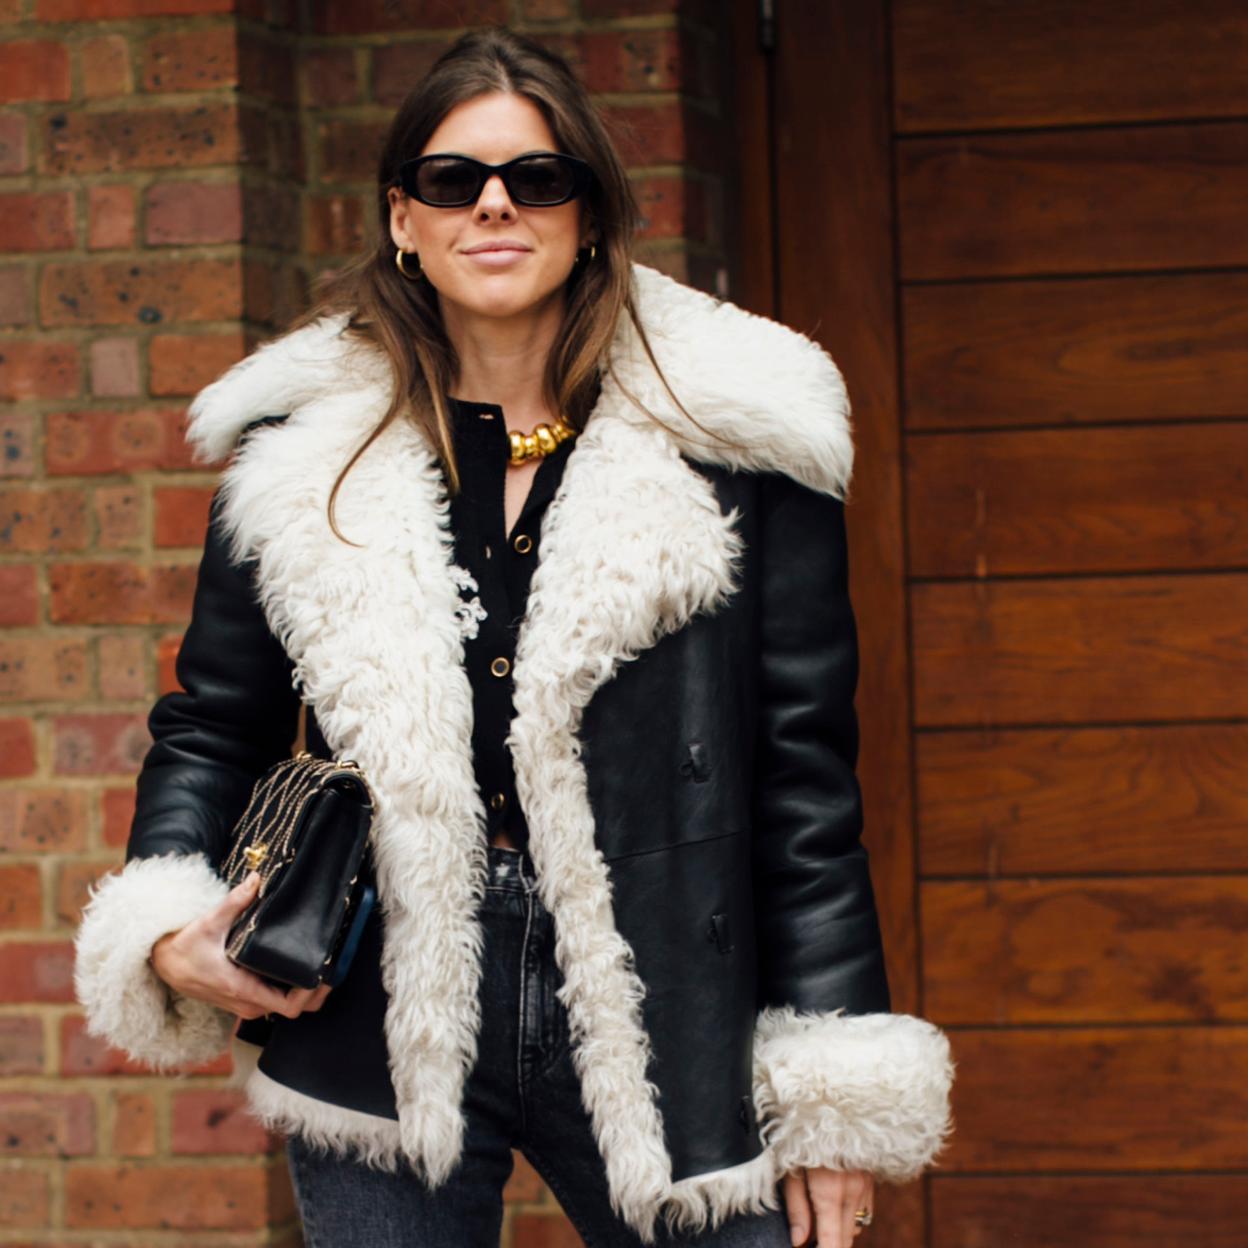 El abrigo corto que aprueban las celebrities eleva tu look con vaqueros blancos | Mujer Hoy